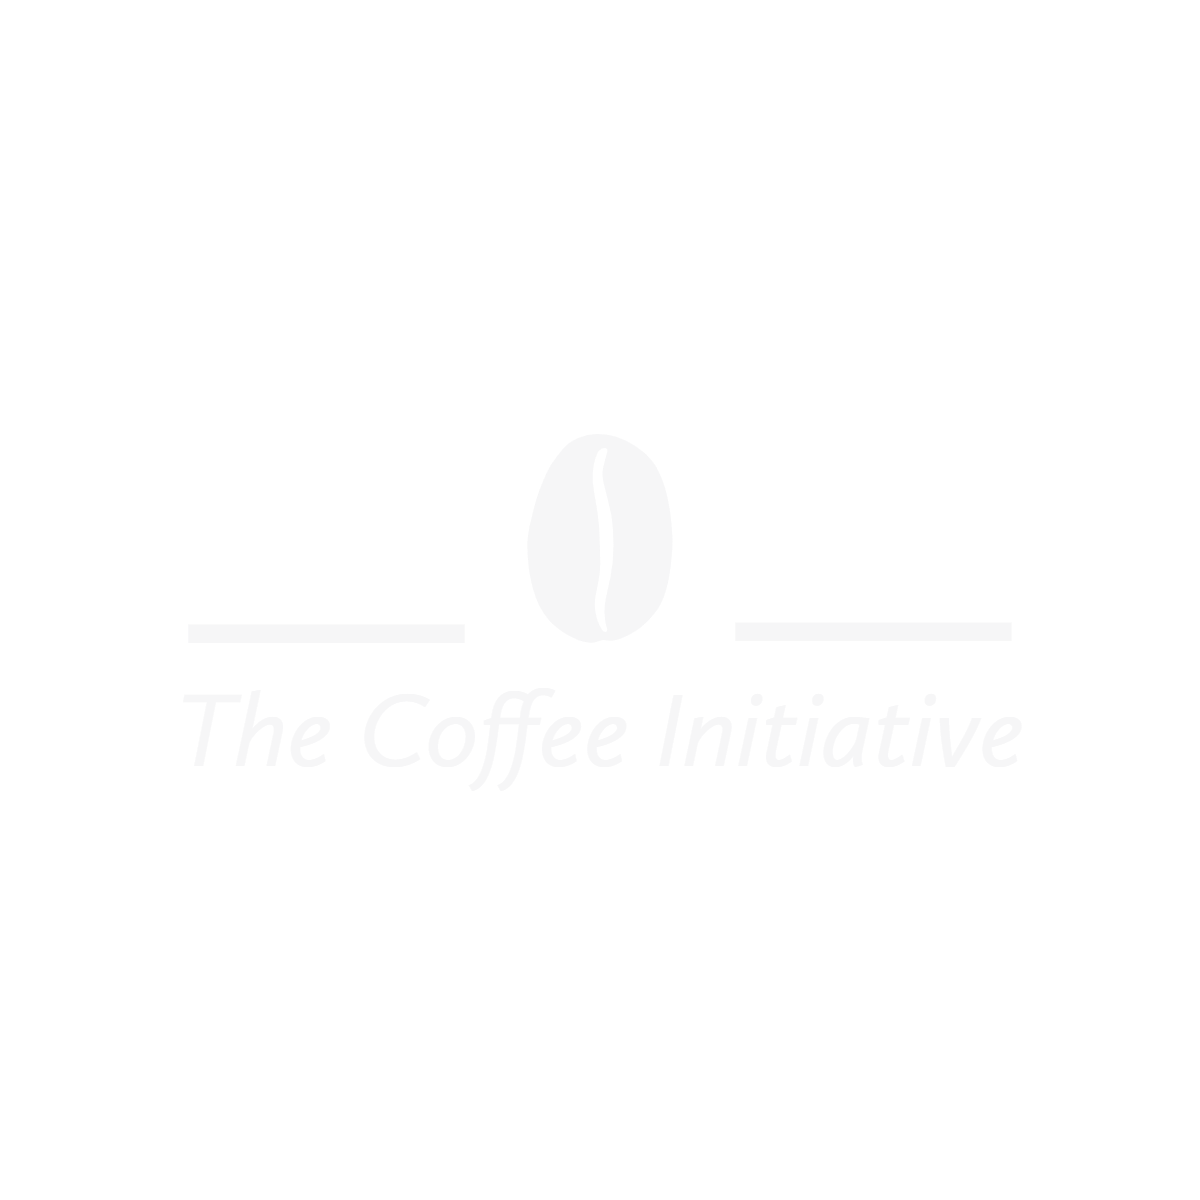 https://www.gourmesso.com/cdn/shop/files/The_Coffee_Initiative-logos_transparent_2048x.png?v=1692396255